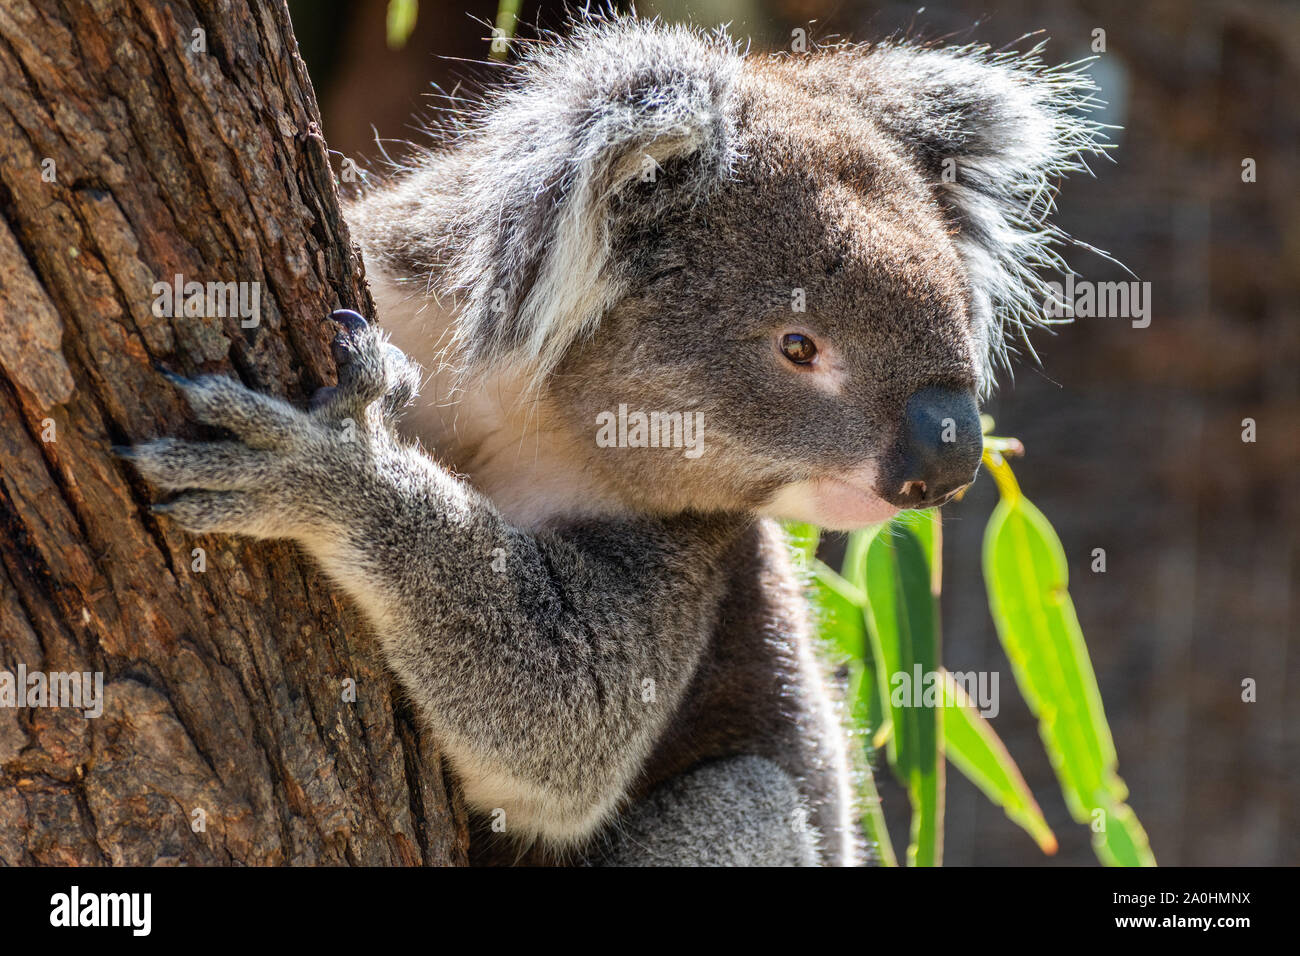 Koala on eucalyptus tree in Australia. Stock Photo